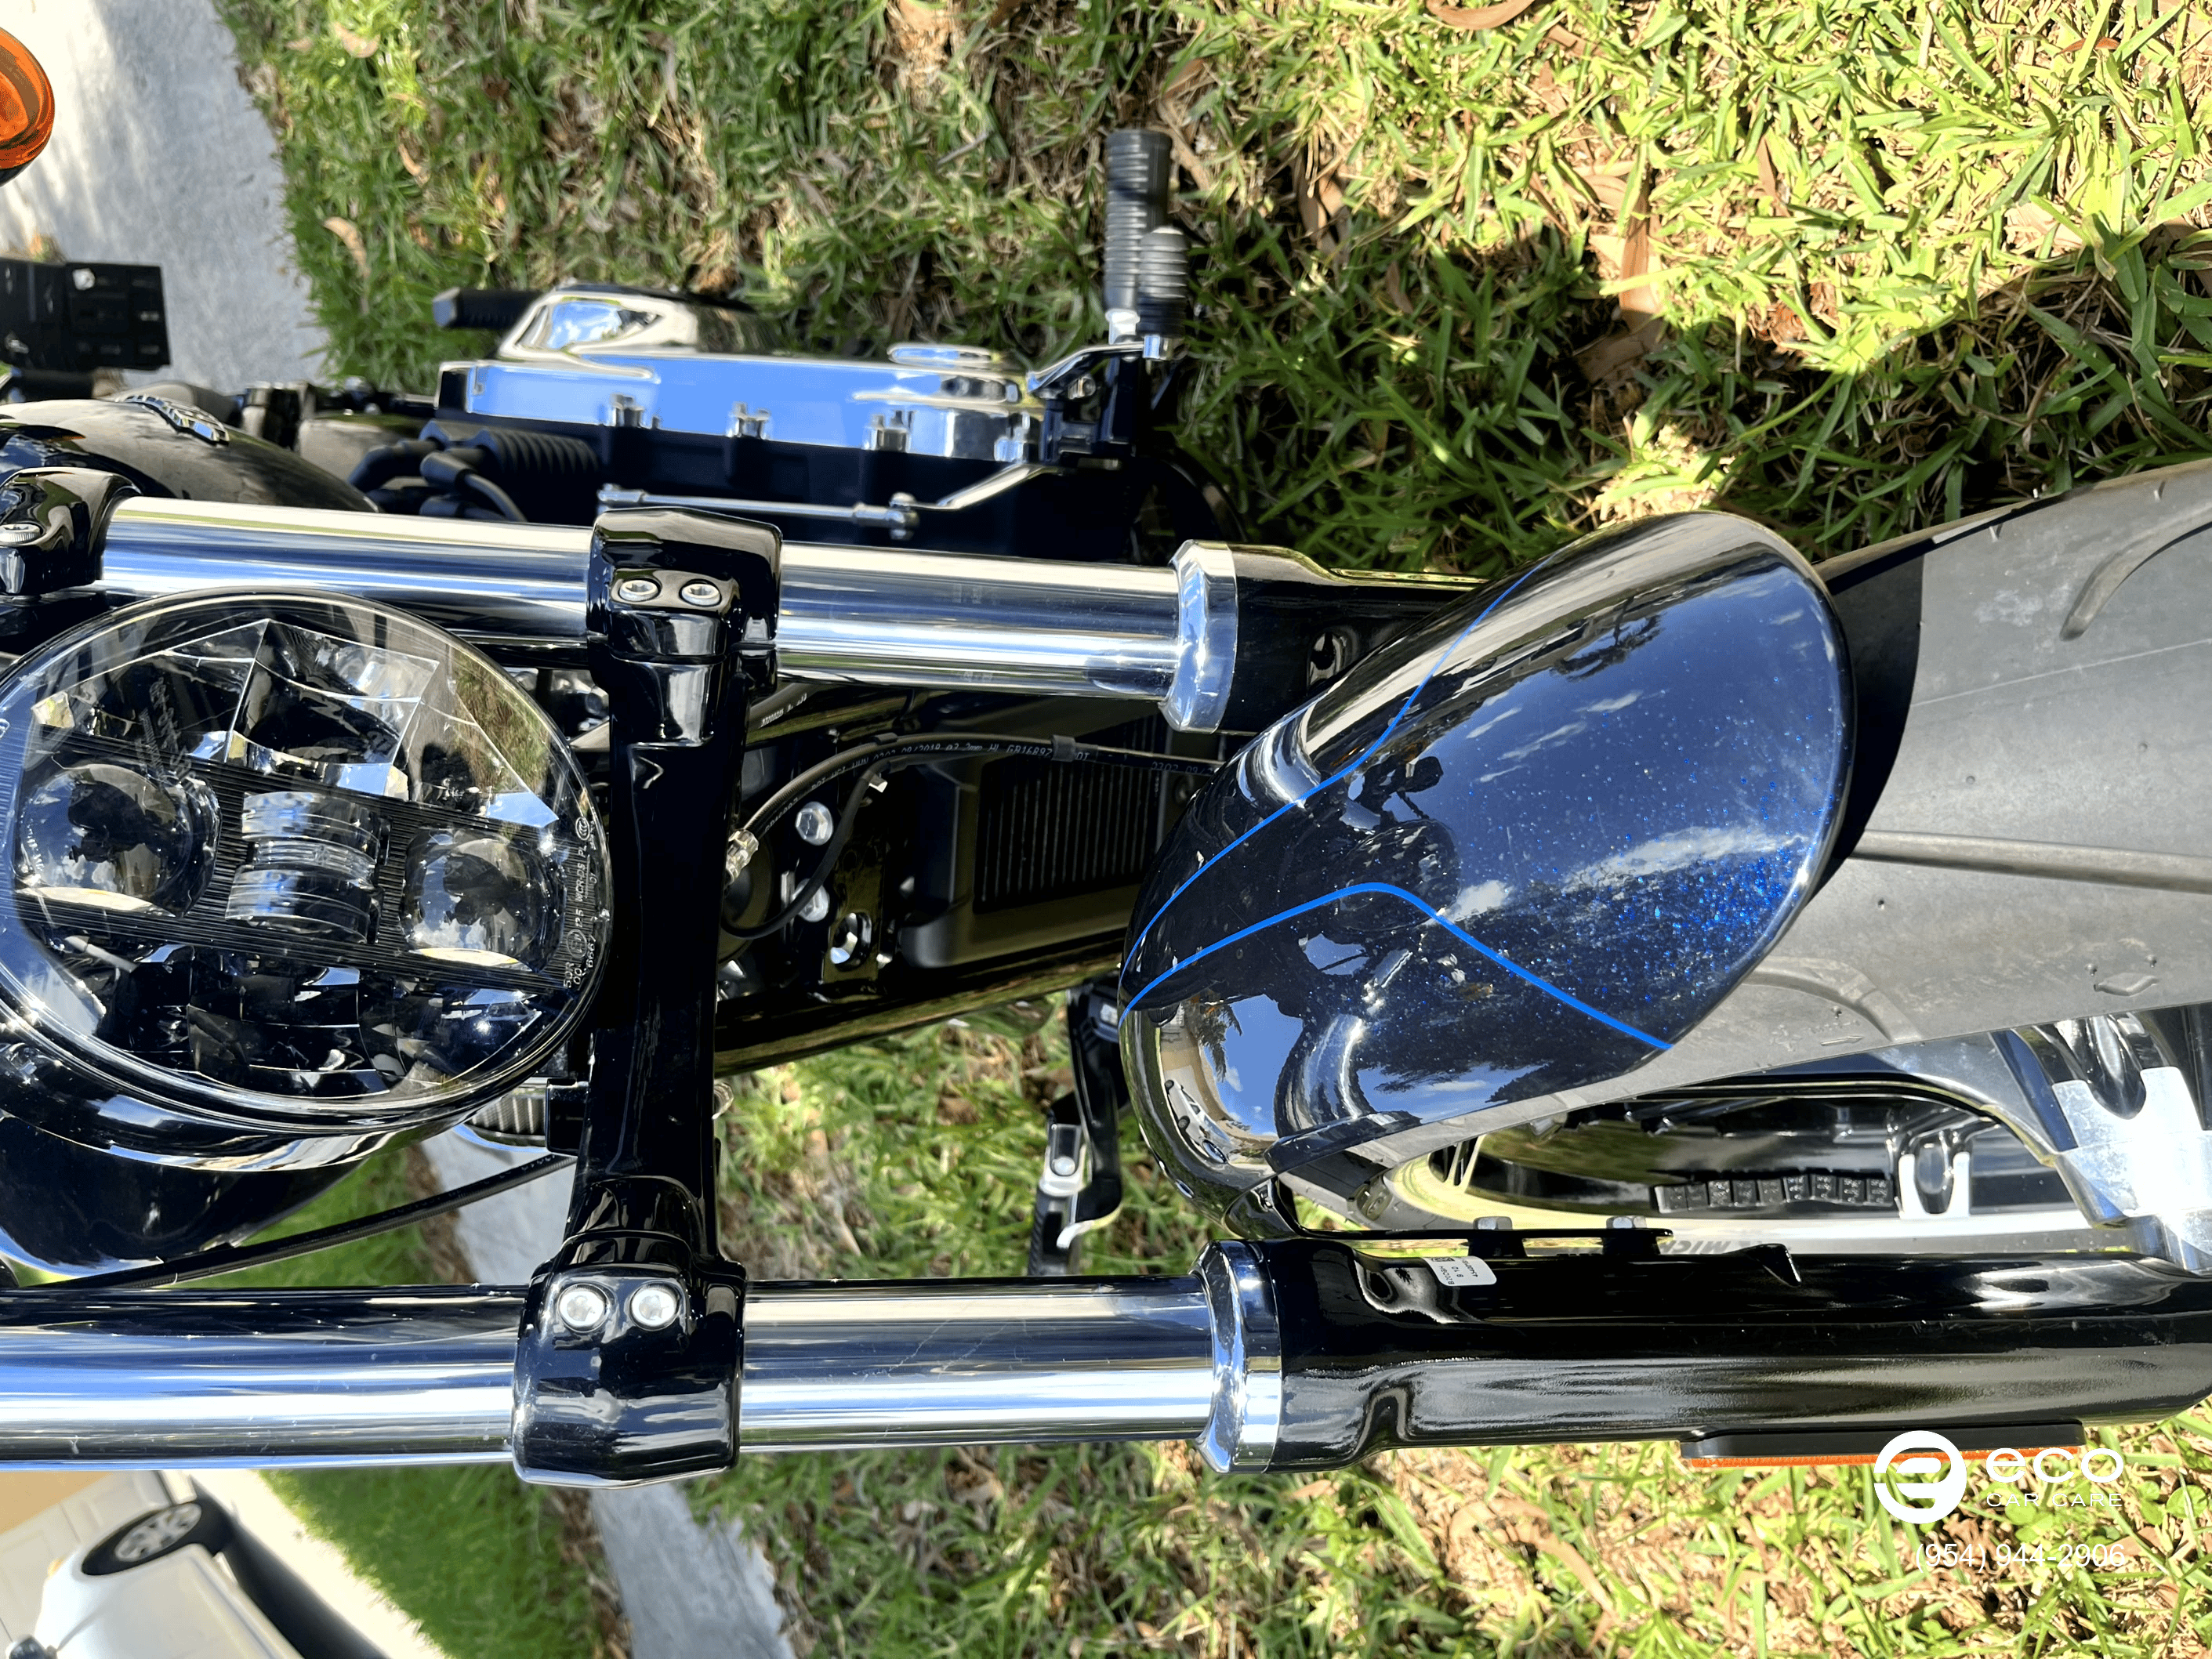 motorcycle detailing